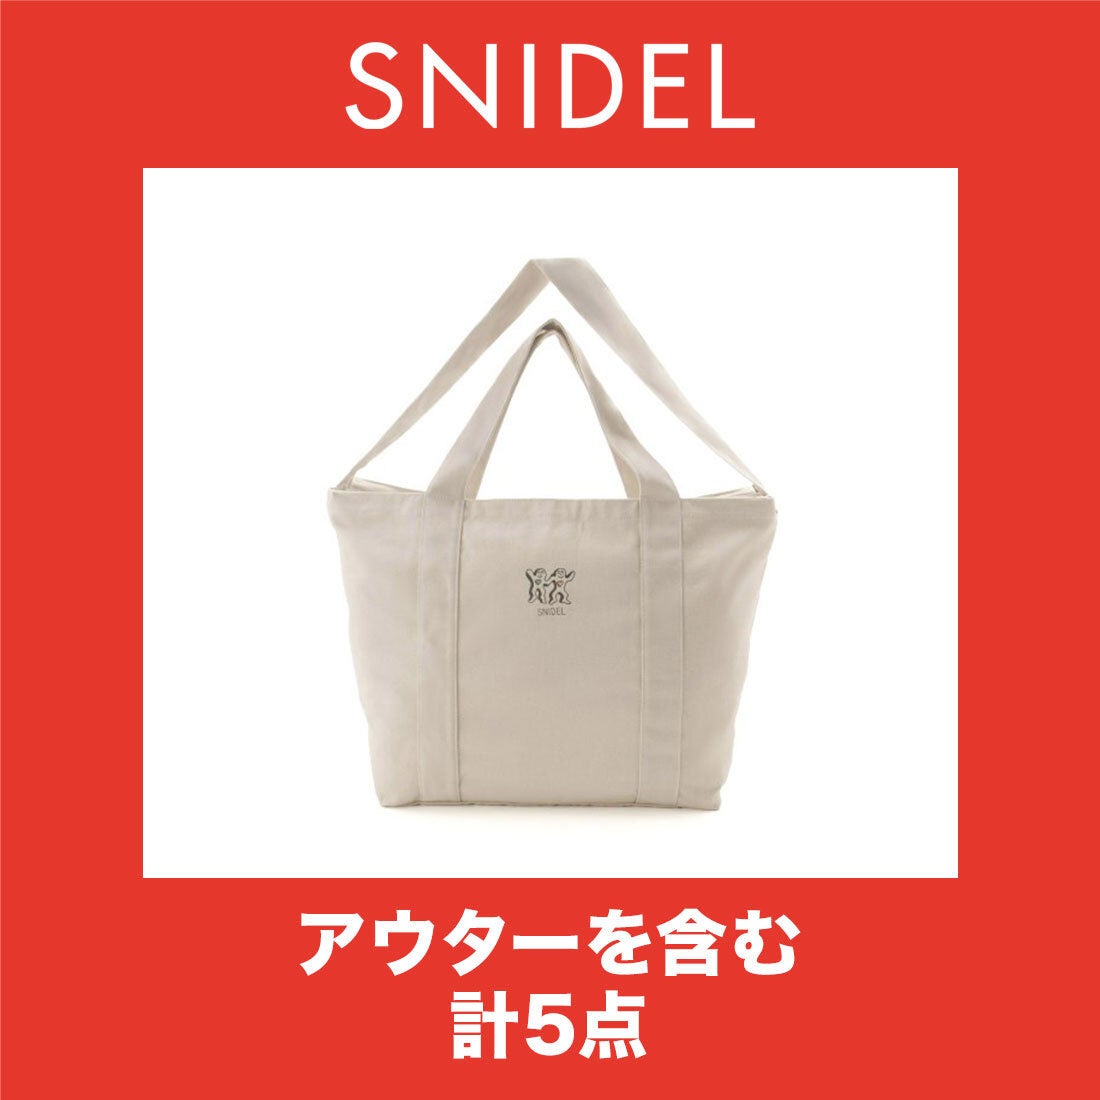 スナイデル SNIDEL 【2021年福袋】2021年 SNIDEL 福袋【返品不可商品 